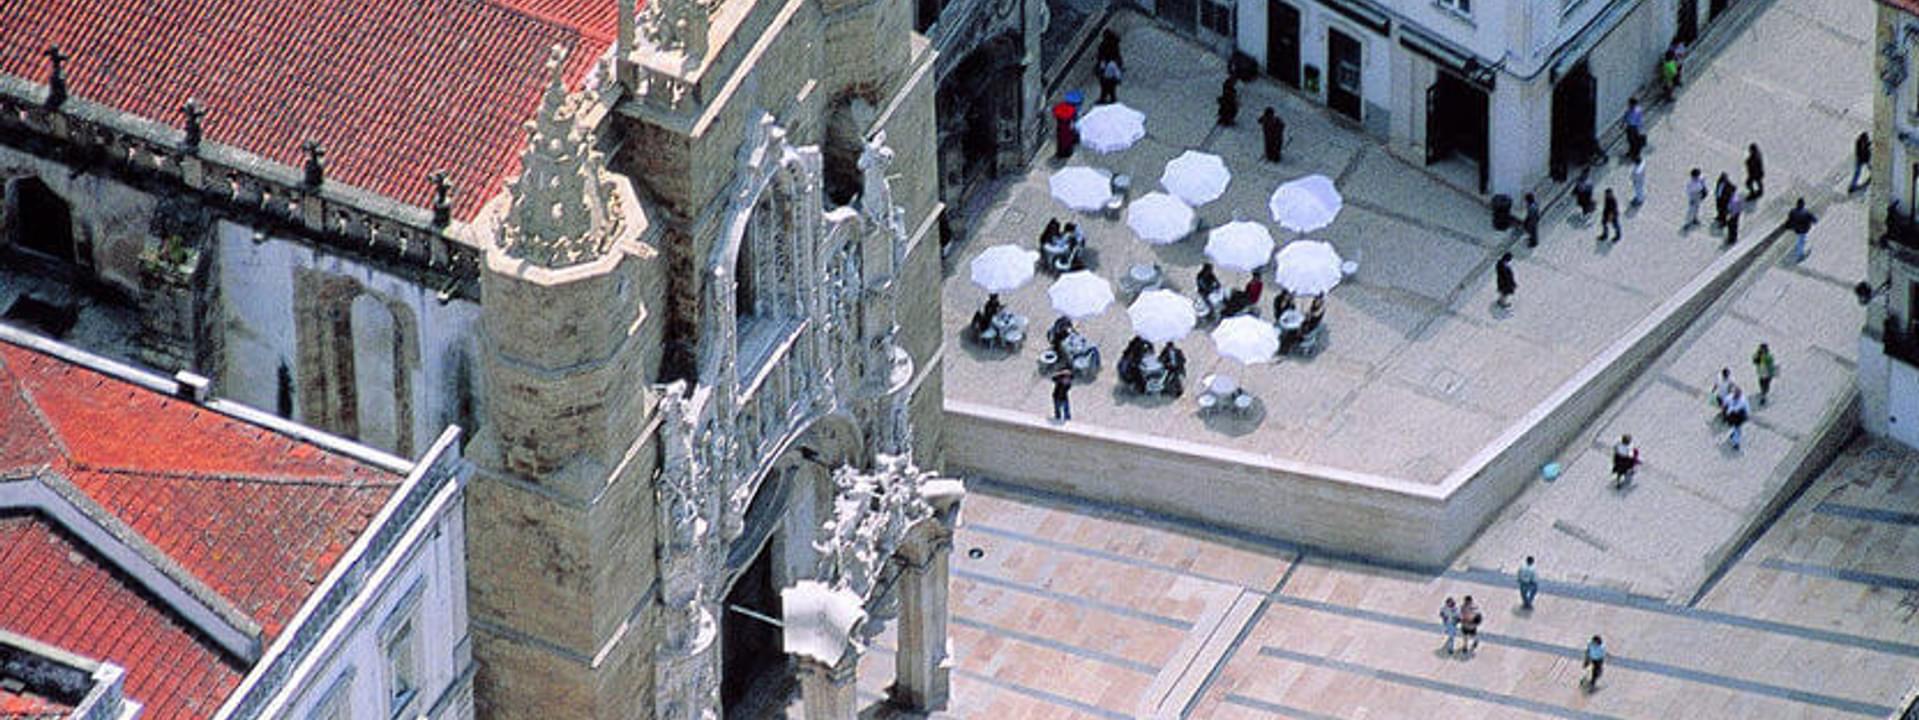 Das Kloster Santa Cruz de Coimbra